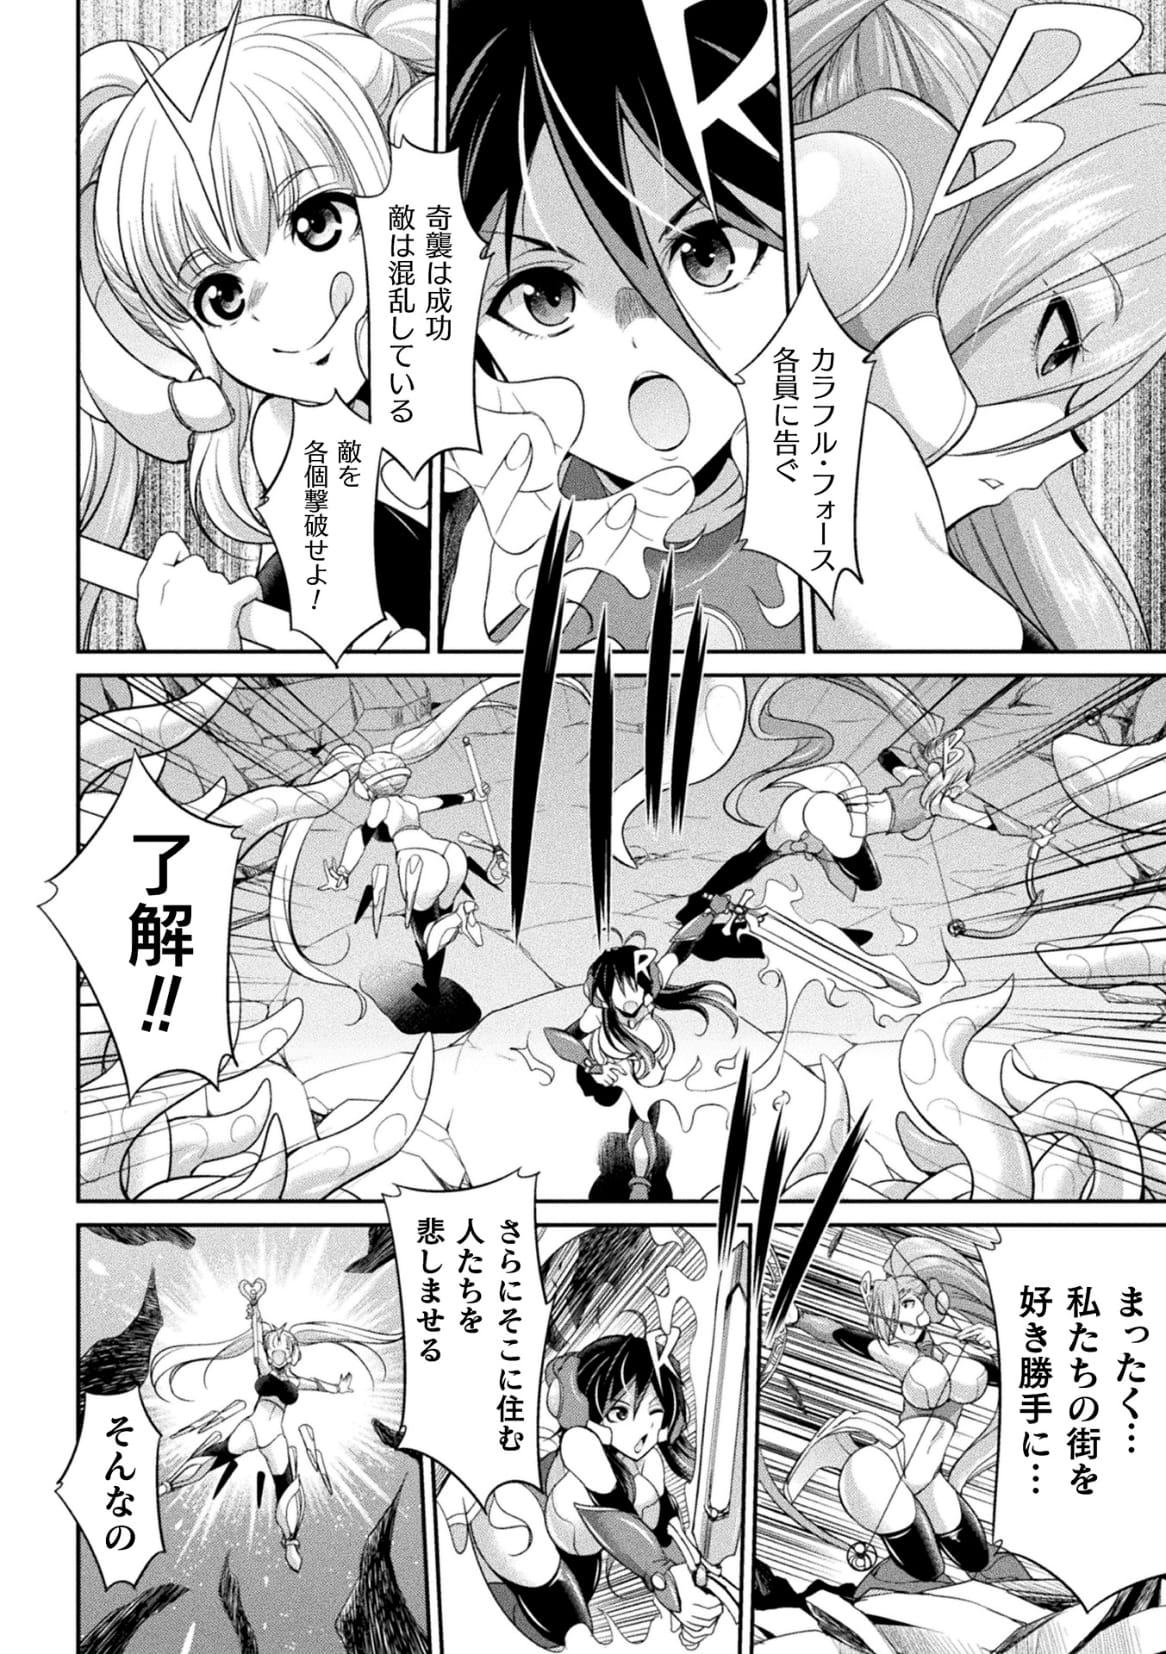 Outdoors Tokumu Sentai Colorful Force Seigi no Heroine vs Shokushu Joou! Futanari Choukyou Daikessen!? Masseuse - Page 8